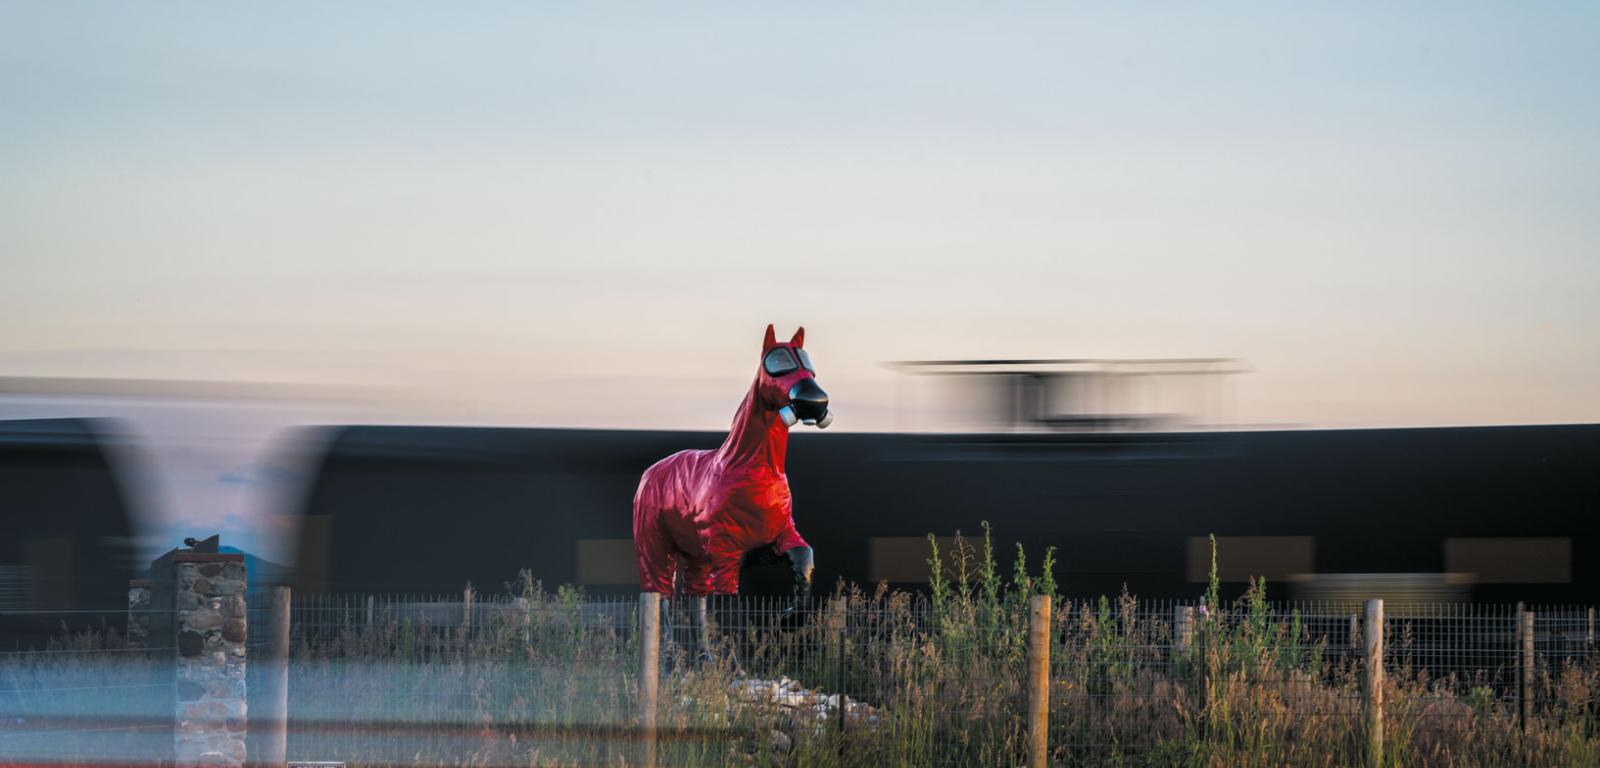 Zimnowojenny koń – rzeźba ustawiona w miejscowości Aravada w stanie Kolorado. Jej autorem jest Jeff Gipe. Przypomina o skażeniu promieniotwórczym, którego źródłem był zakład Rocky Flats Nuclear Weapons Plant, gdzie ojciec Jeffa Gipe’a pracował przez 20 lat.